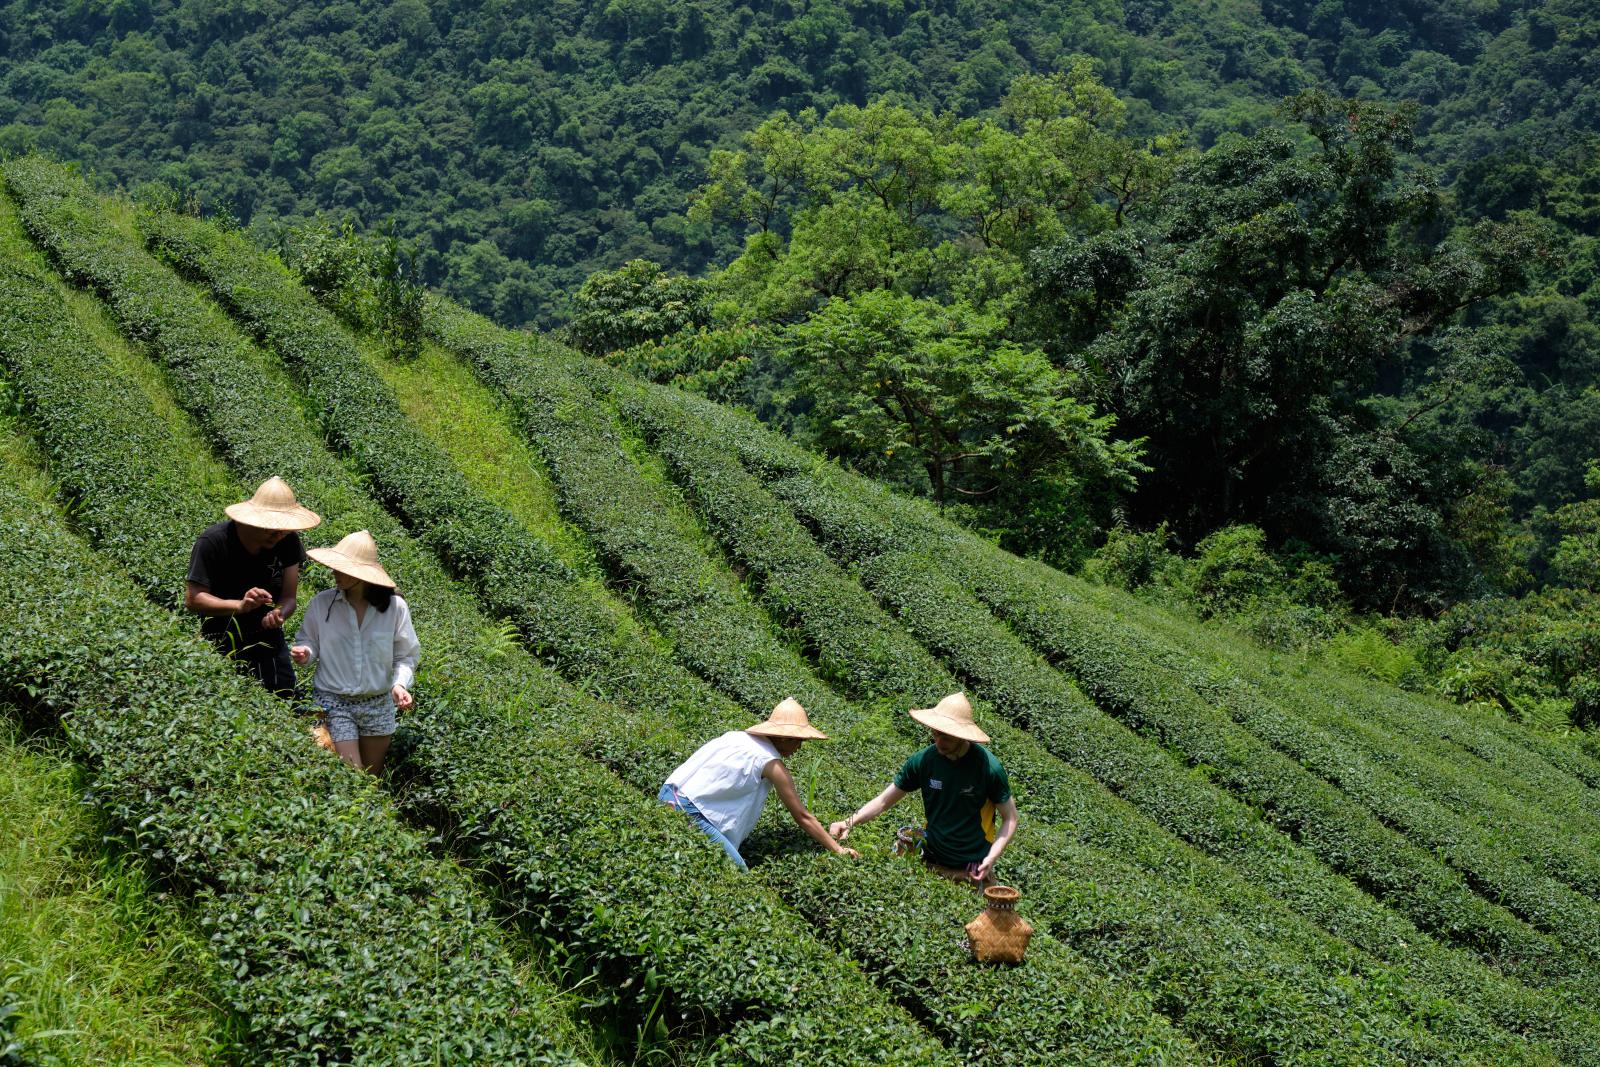 Pick tea leaves on MyTaiwanTour's Rural Tea Tour